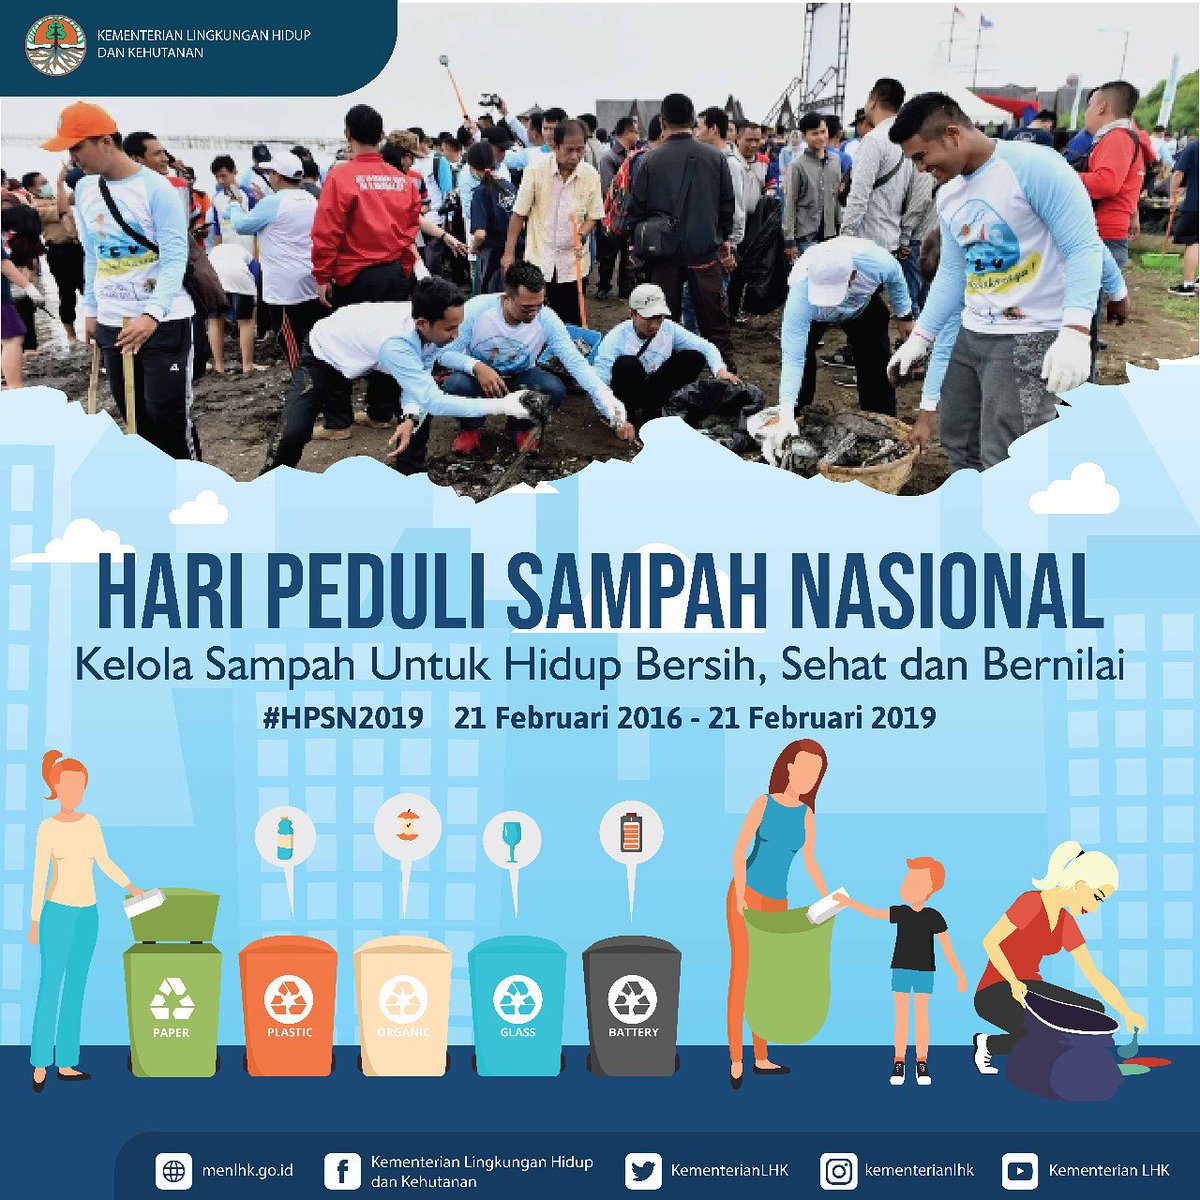 gerakan kelola bersih sampah dimanapun kita berada, untuk mewujudkan Indonesia yang bersih, sehat, dan bernilai.
Selamat Hari Peduli Sampah Nasional 2019😊💪 #HPSN2019
#HariPeduliSampah
#KLHK
#kerjaberdampak 
#HPSN 
#bikinindonesiamaju 
#pemerintahbekerja 
#sampahplastik
#sampah